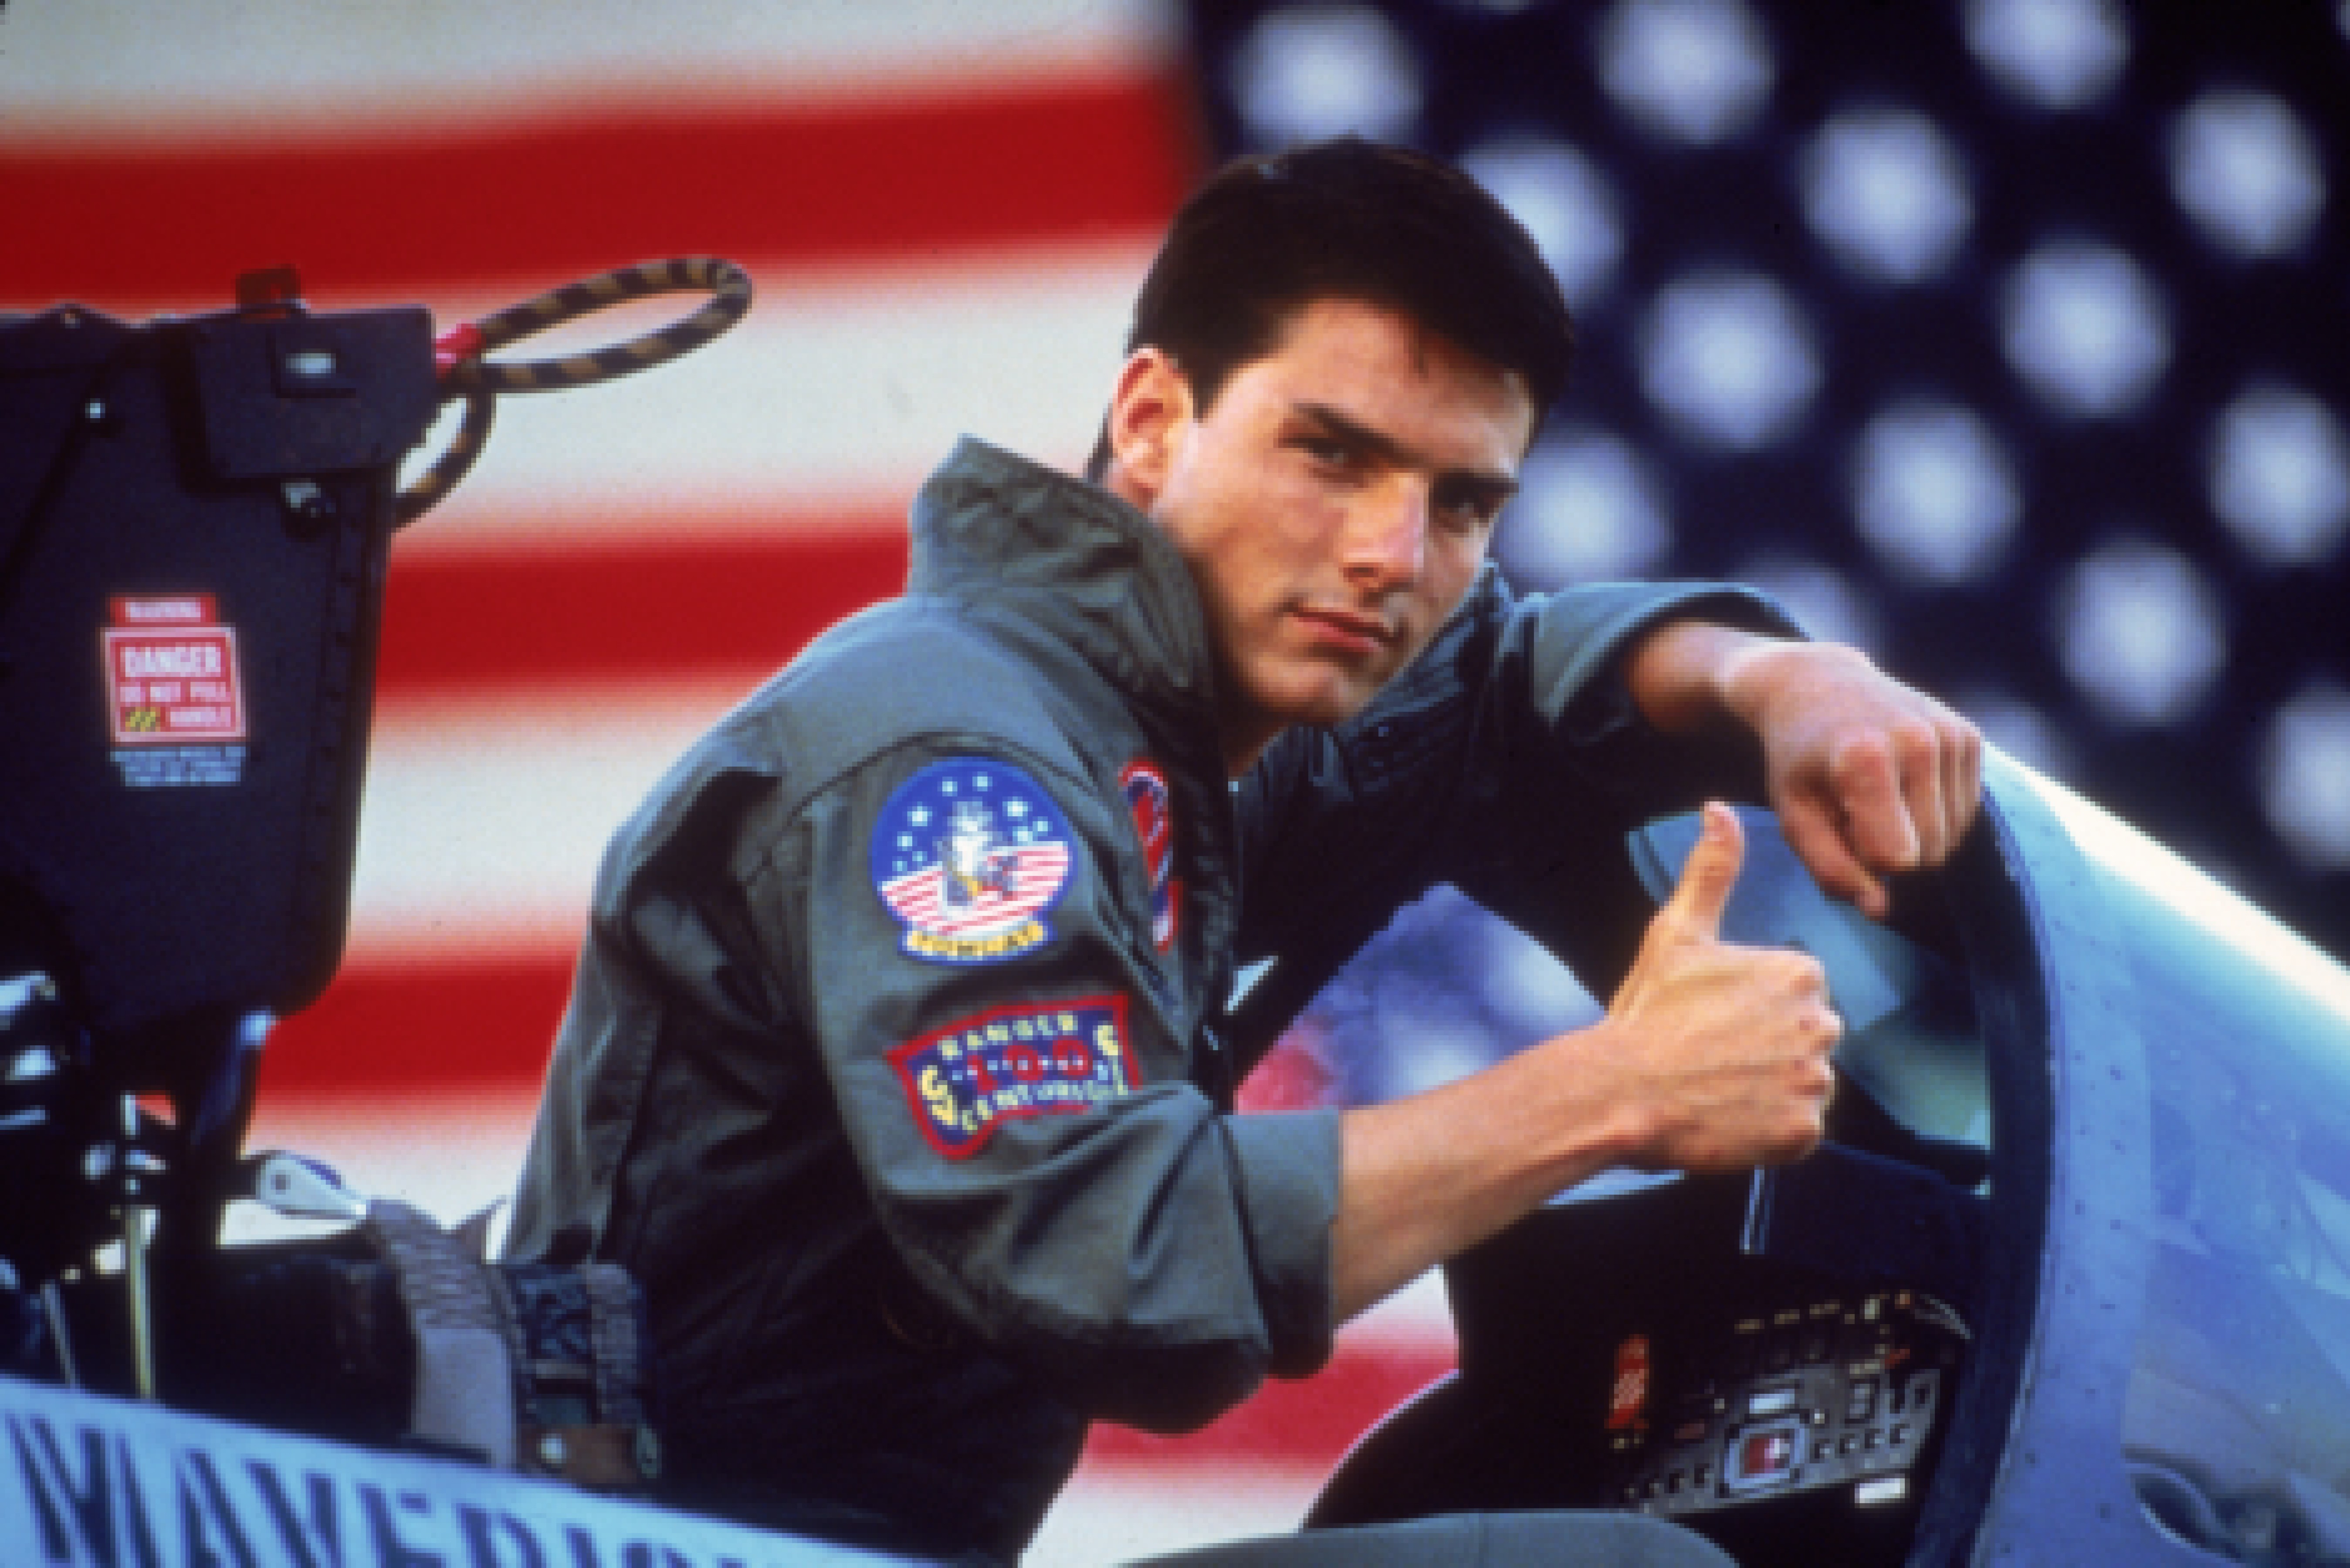 Hans mest kända film blev "Top Gun" från 1986 med Tom Cruise i huvudrollen.